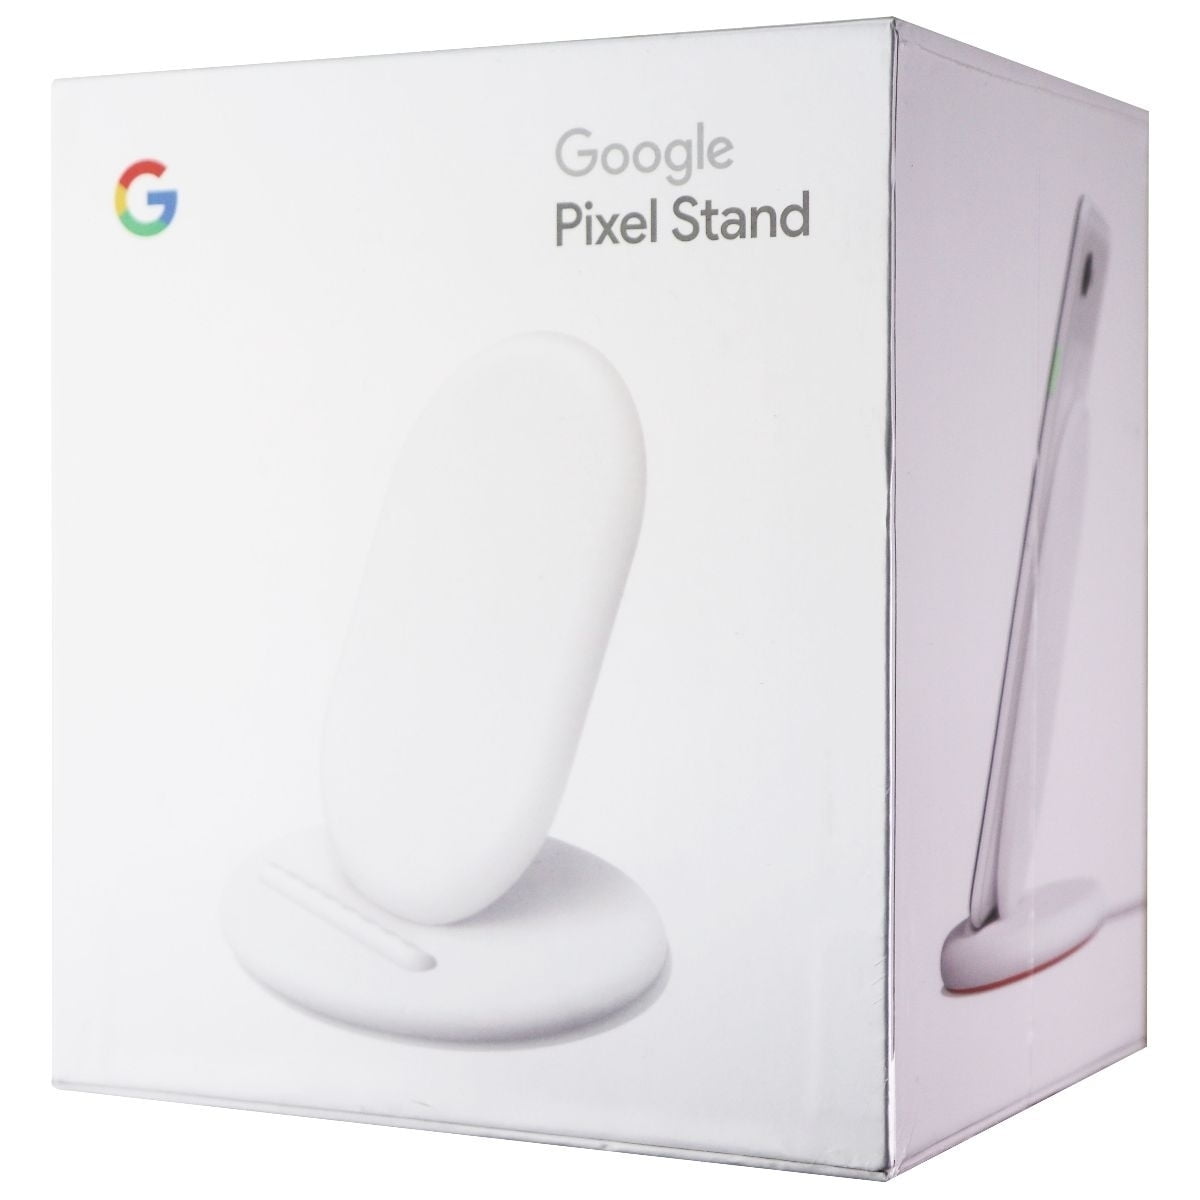 Google pixel standホワイト商品パッケージの寸法